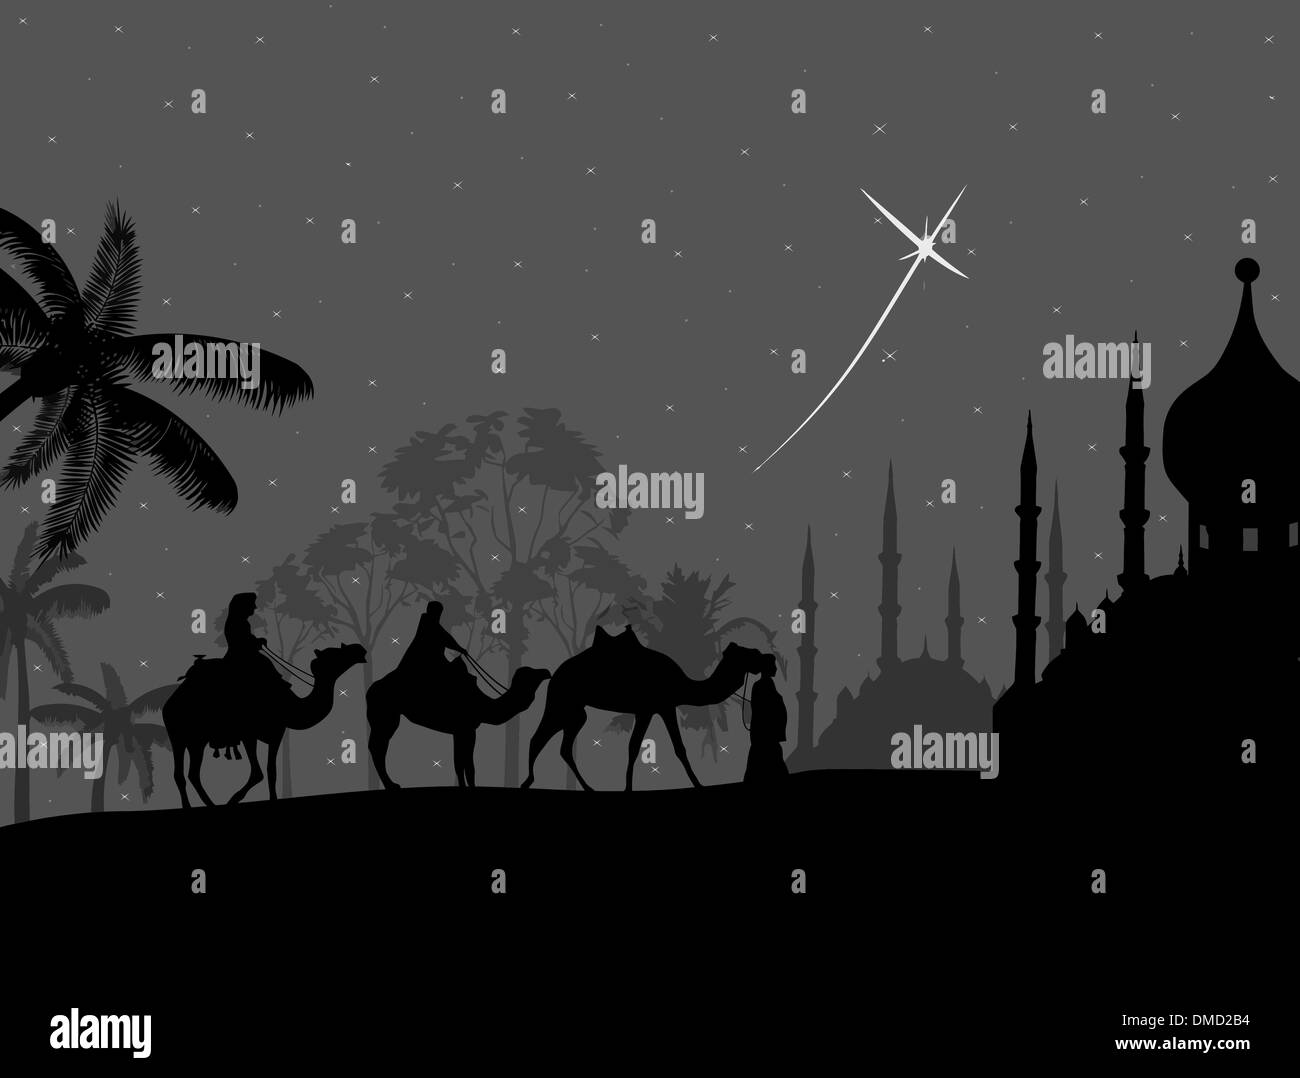 Caravane de chameaux bédouin sur nuit Illustration de Vecteur